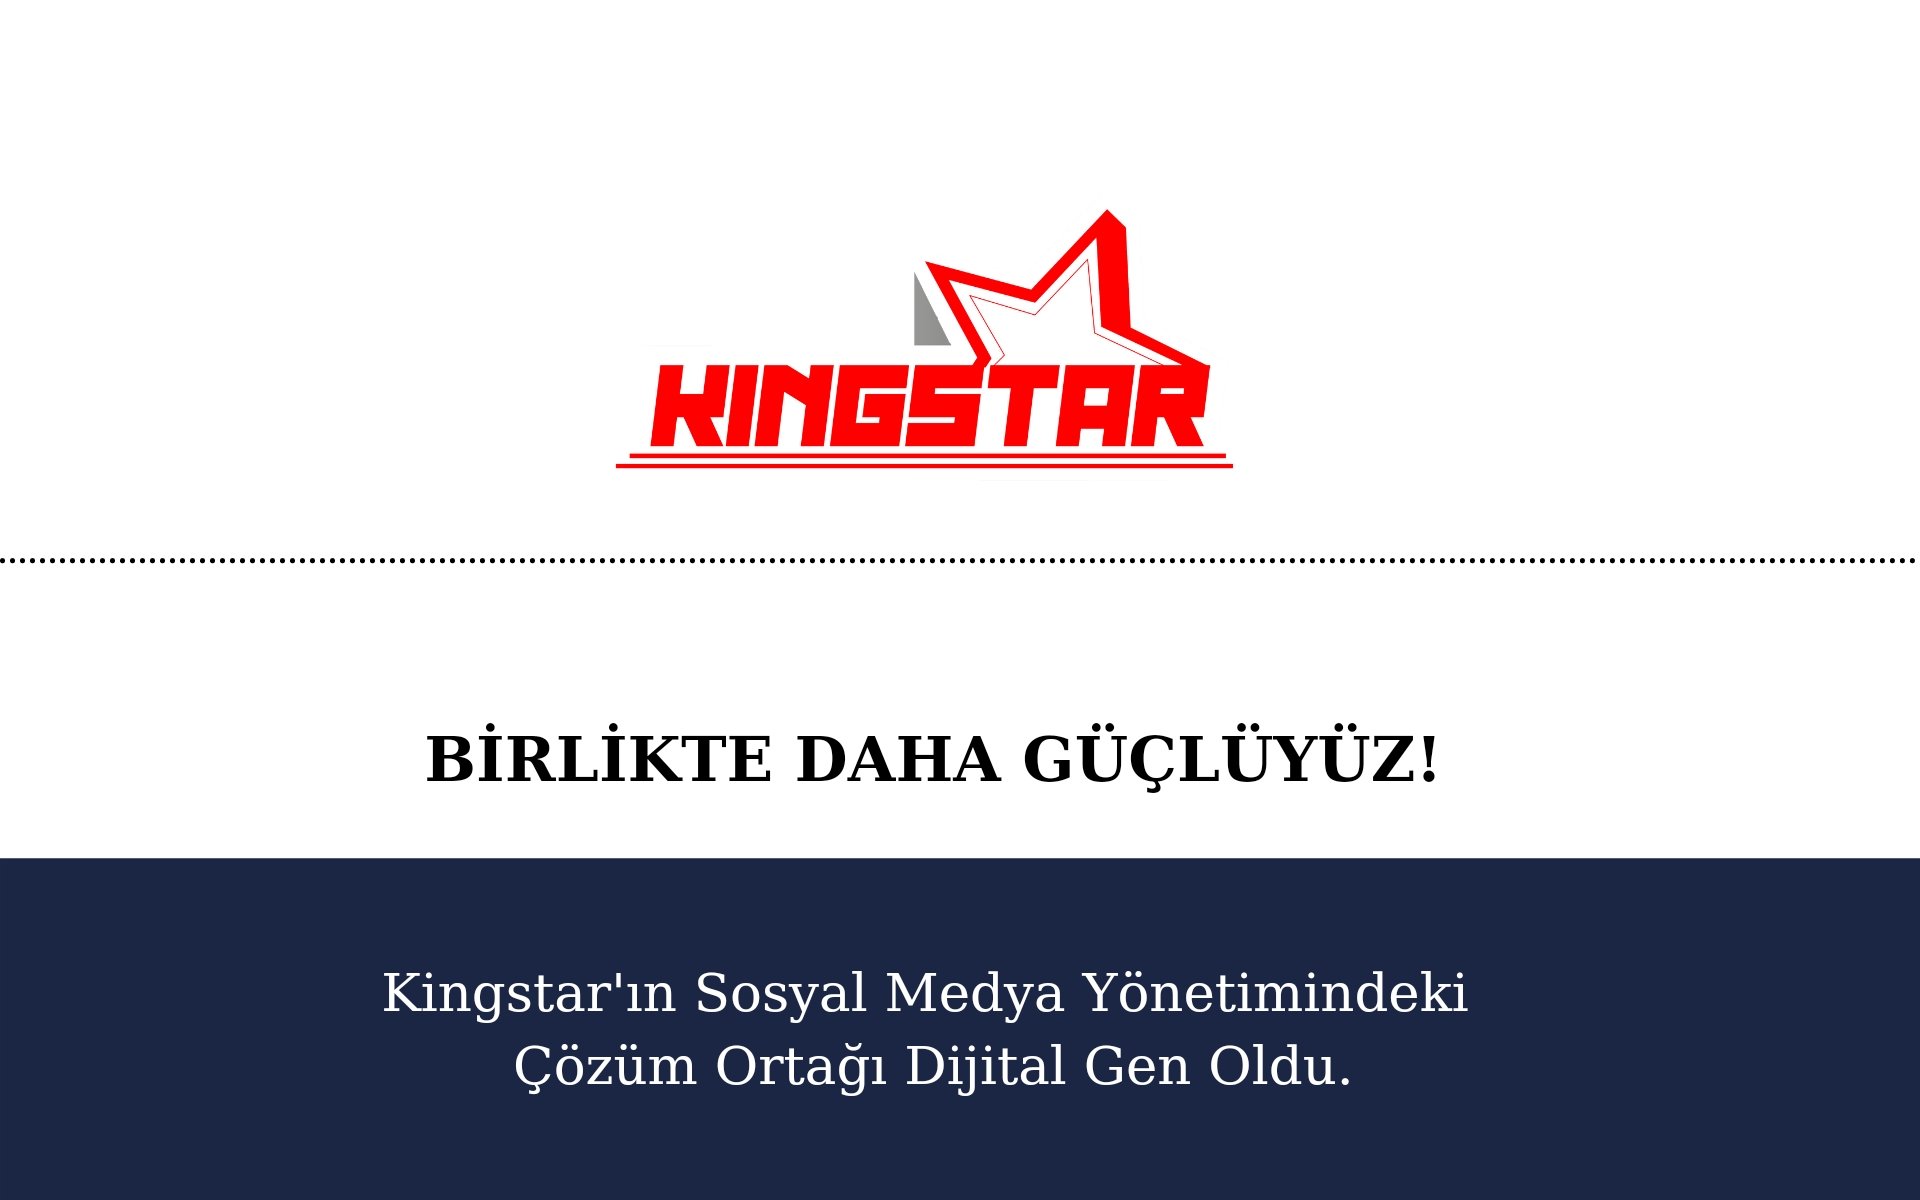 Dijital Gen is Kingstar’s Solution Partner in Social Media Management.